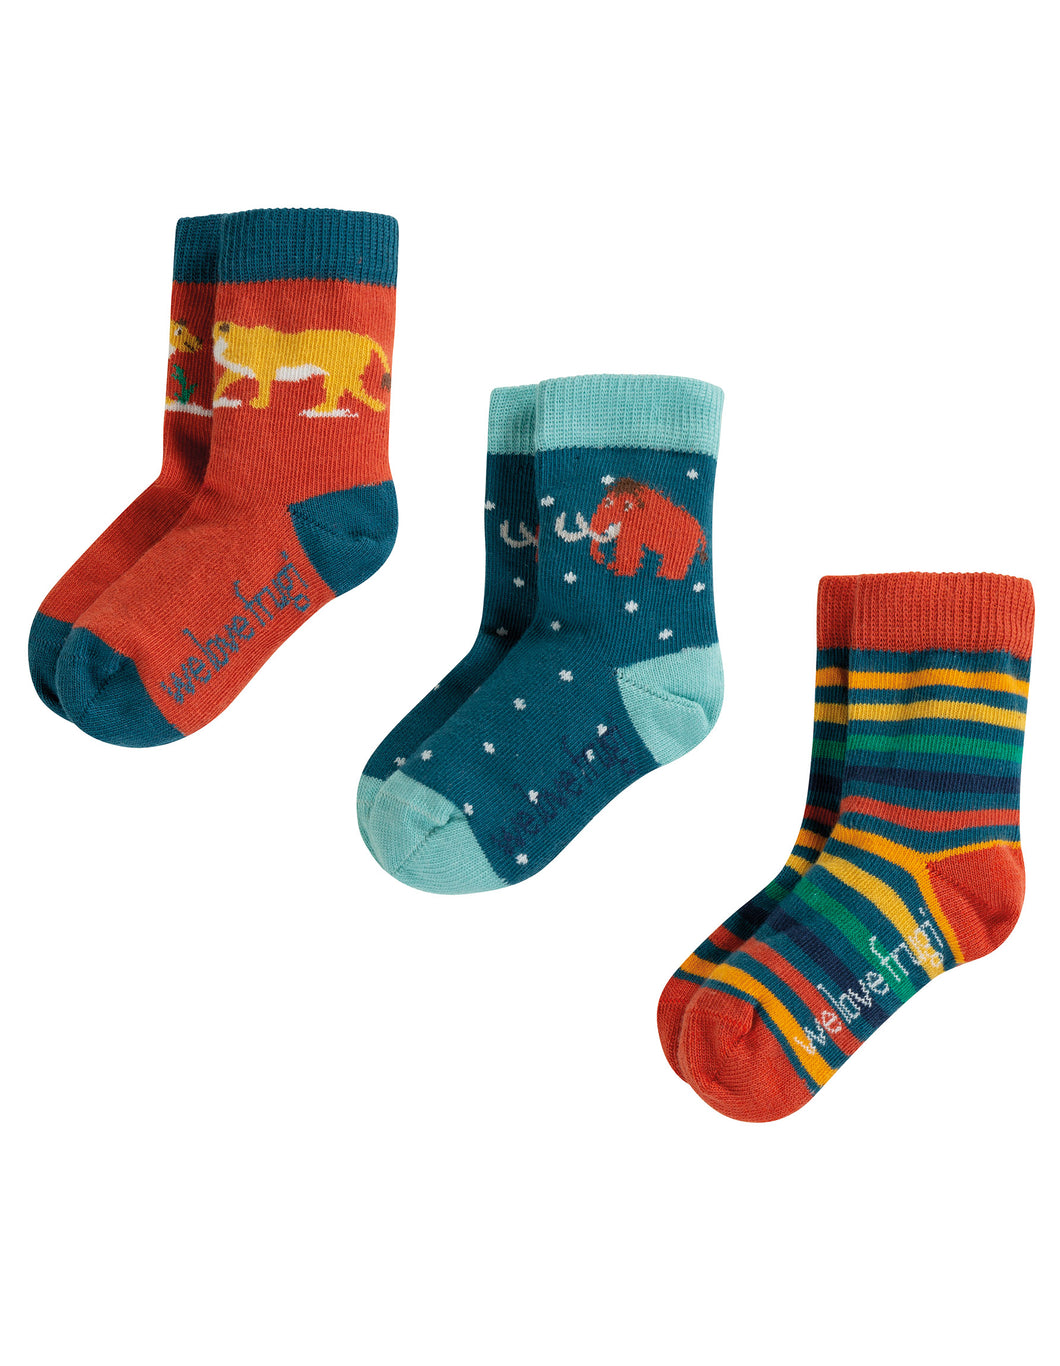 Prehistoric Little Socks 3pk